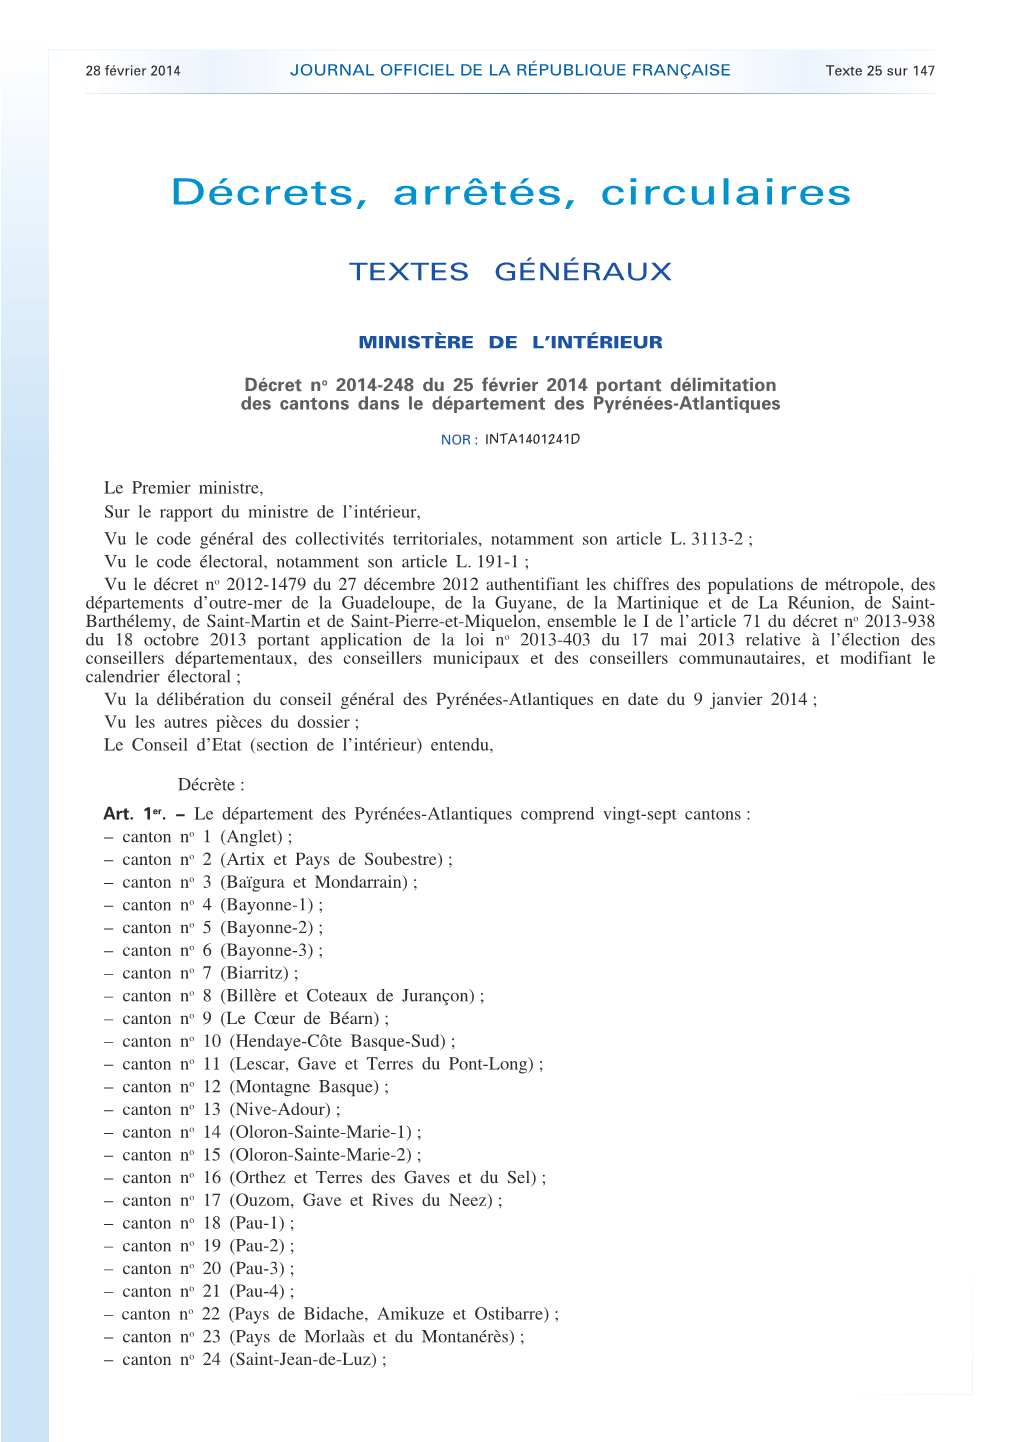 JOURNAL OFFICIEL DE LA RÉPUBLIQUE FRANÇAISE Texte 25 Sur 147